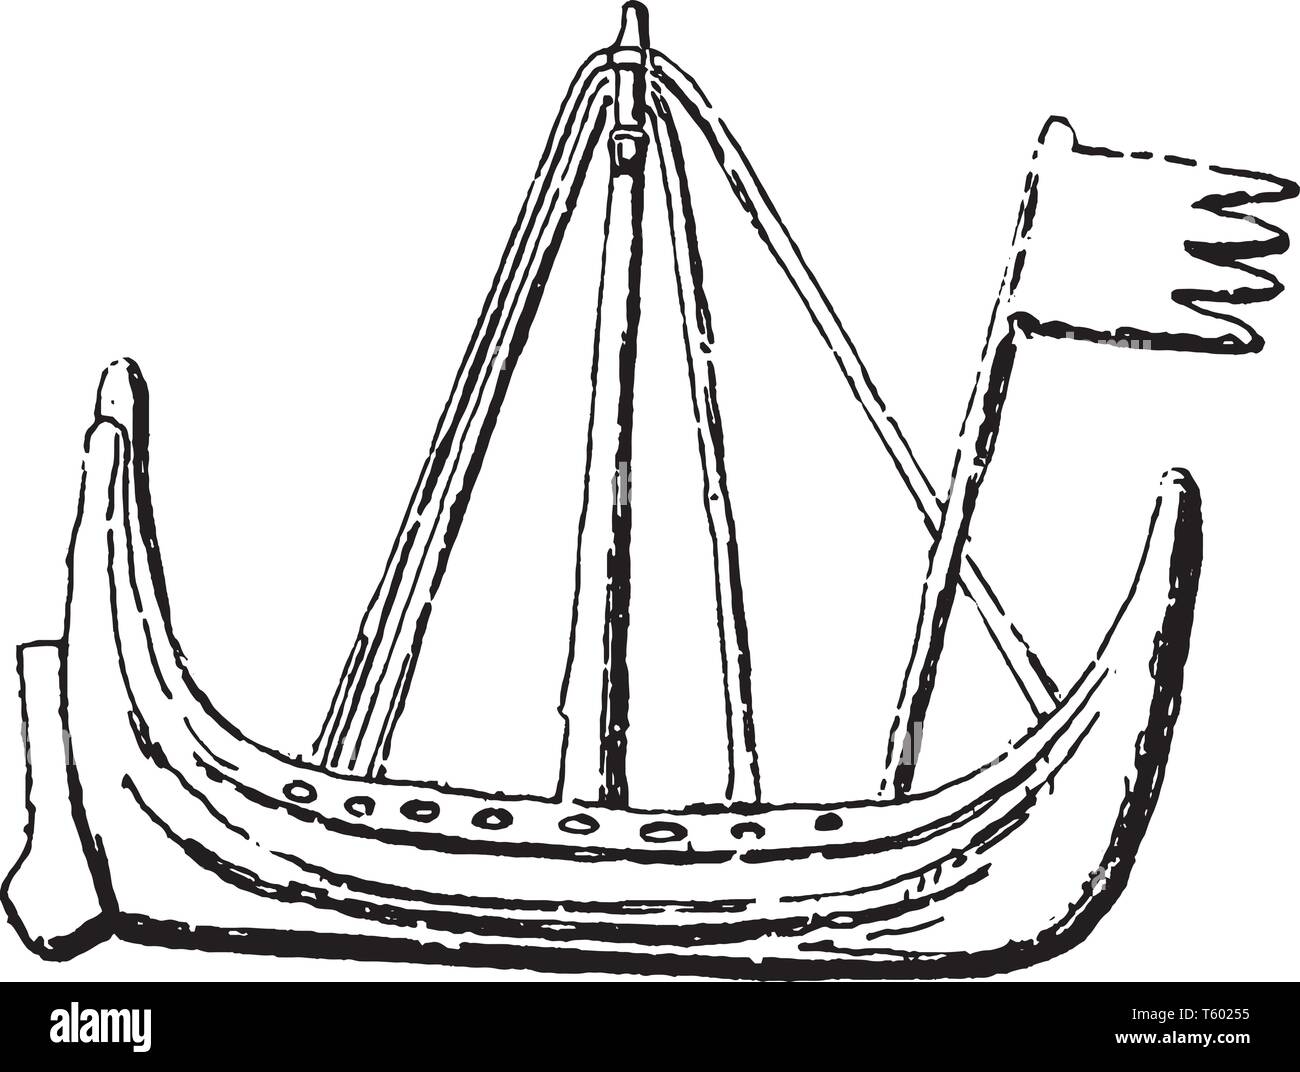 Barca danese o Chiule assurdo lungo litorale è infilate con una collana di porti e scali, vintage disegno della linea di incisione o illustrazione. Illustrazione Vettoriale